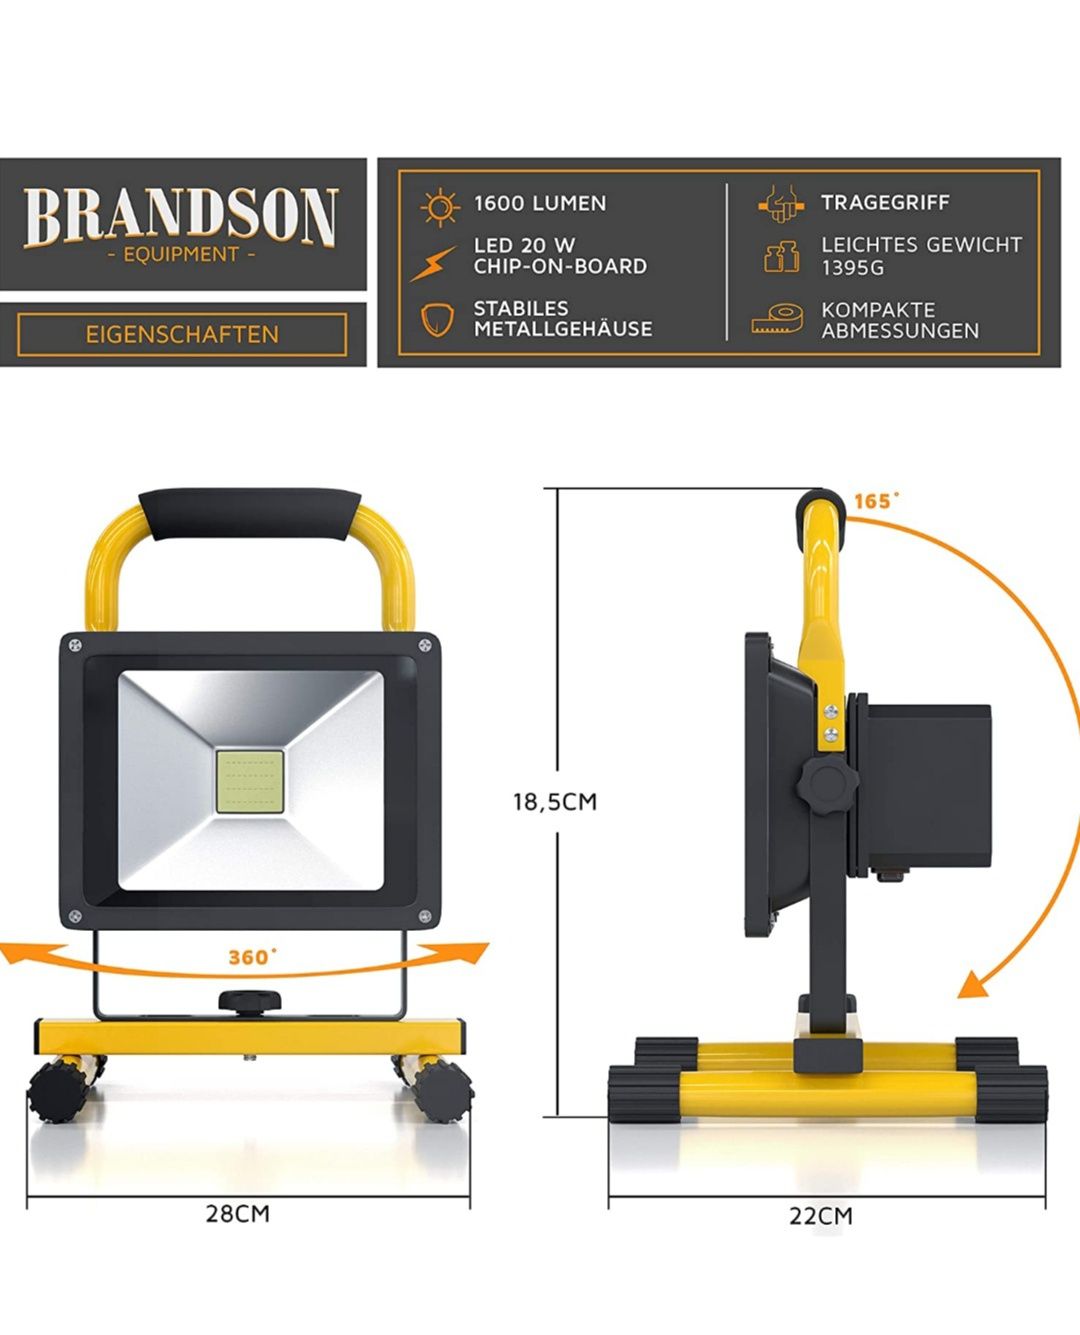 Brandson - Projector LED pentru constructii cu baterie